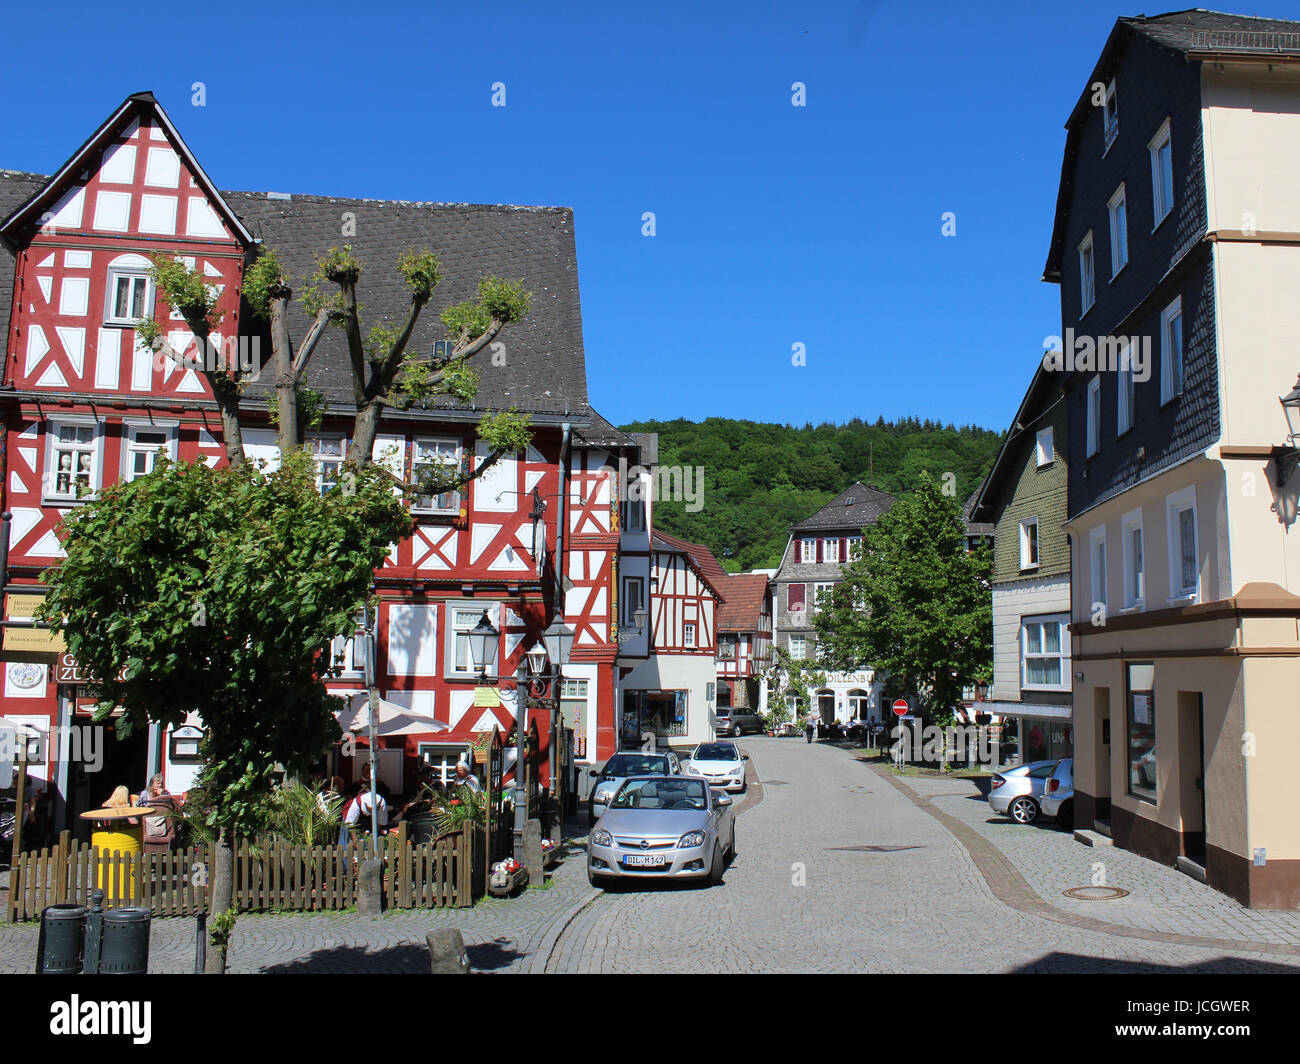 DILLENBURG, Germania, 27 maggio 2017: vista del centro storico della città vecchia di Dillenburg in Hesse che è una popolare destinazione turistica e parte del ' Foto Stock